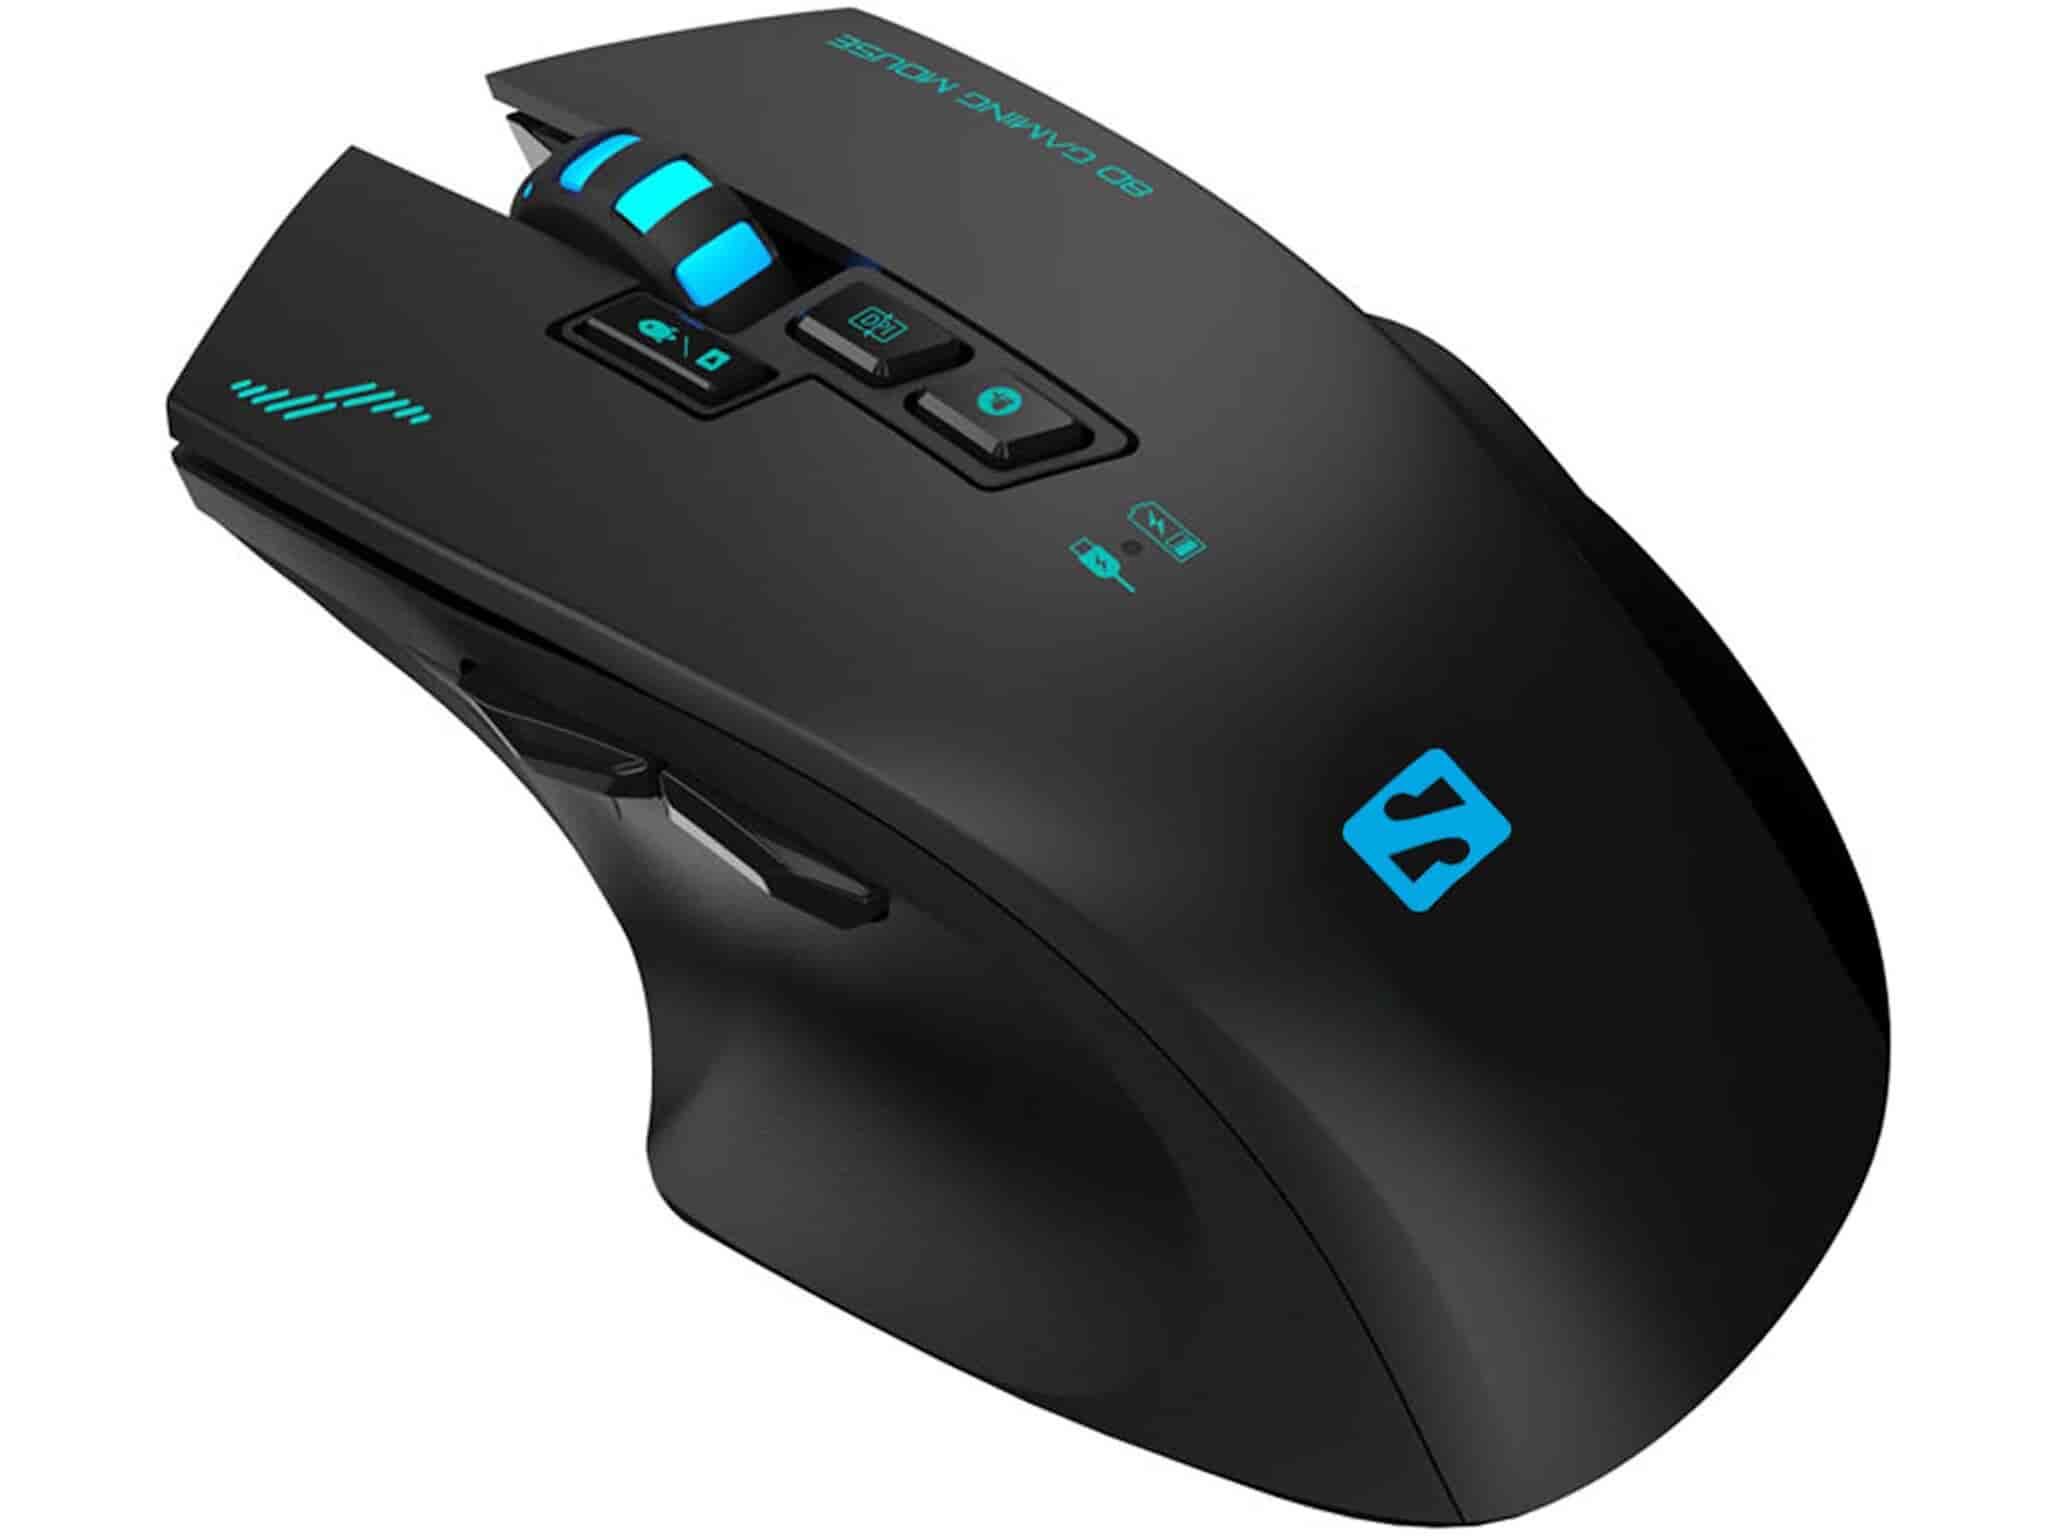 Sniper mouse til gameren - Mus med optisk sensor, 8 knapper, LED lys og fedt scroolhjul. Brug den trådløst eller med kabel.